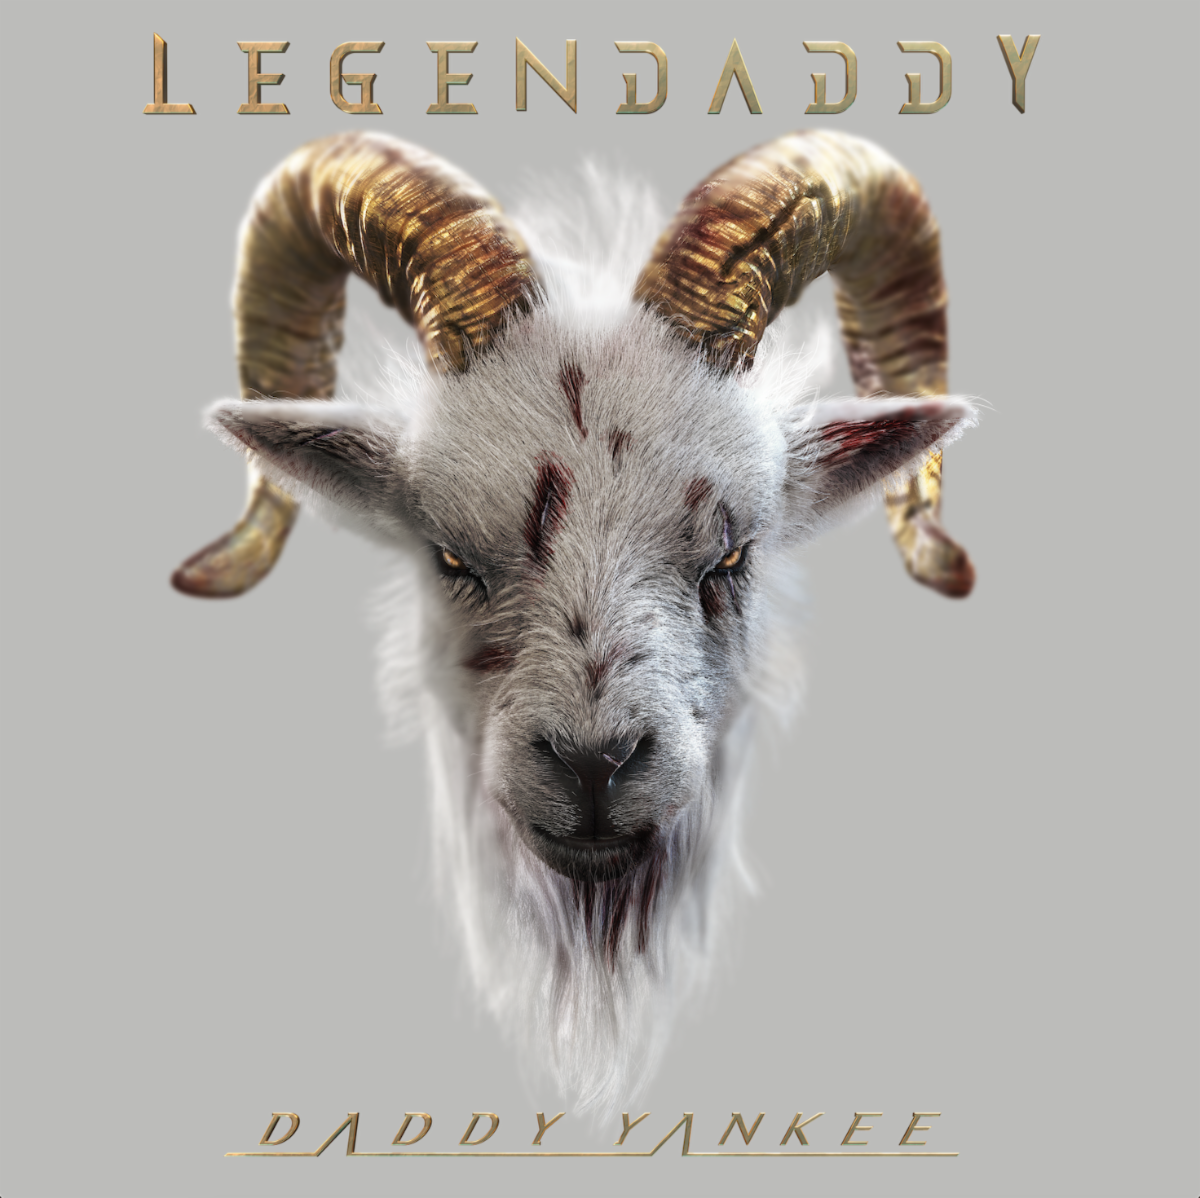 DADDY YANKEE se despide de la música con “Legendaddy”